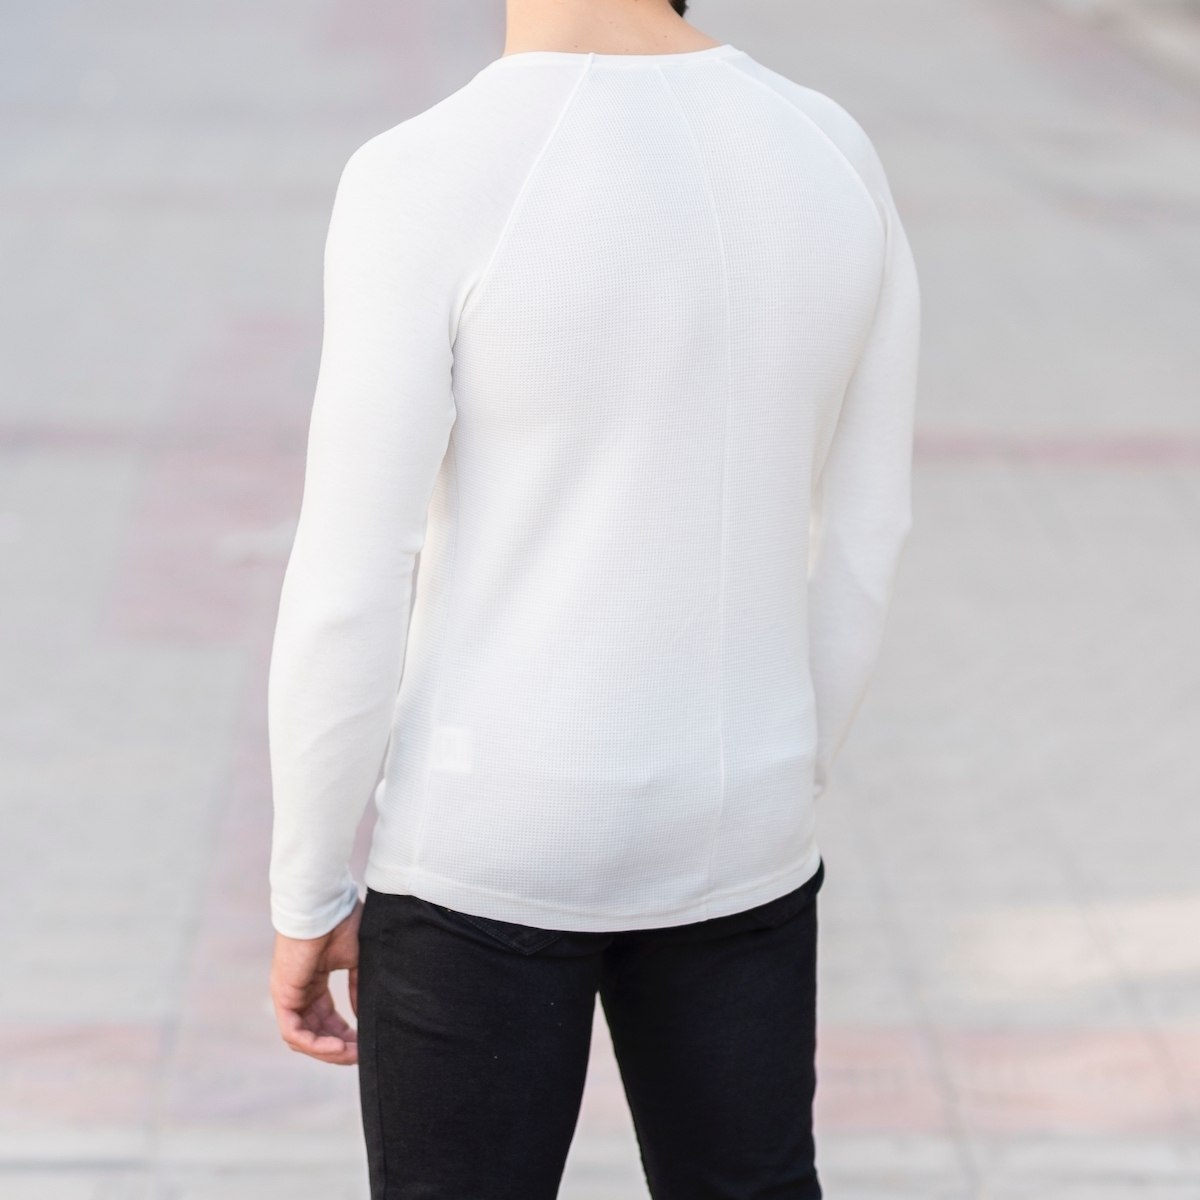 Herren Slim-Fit Sweatshirt in weiß - 3